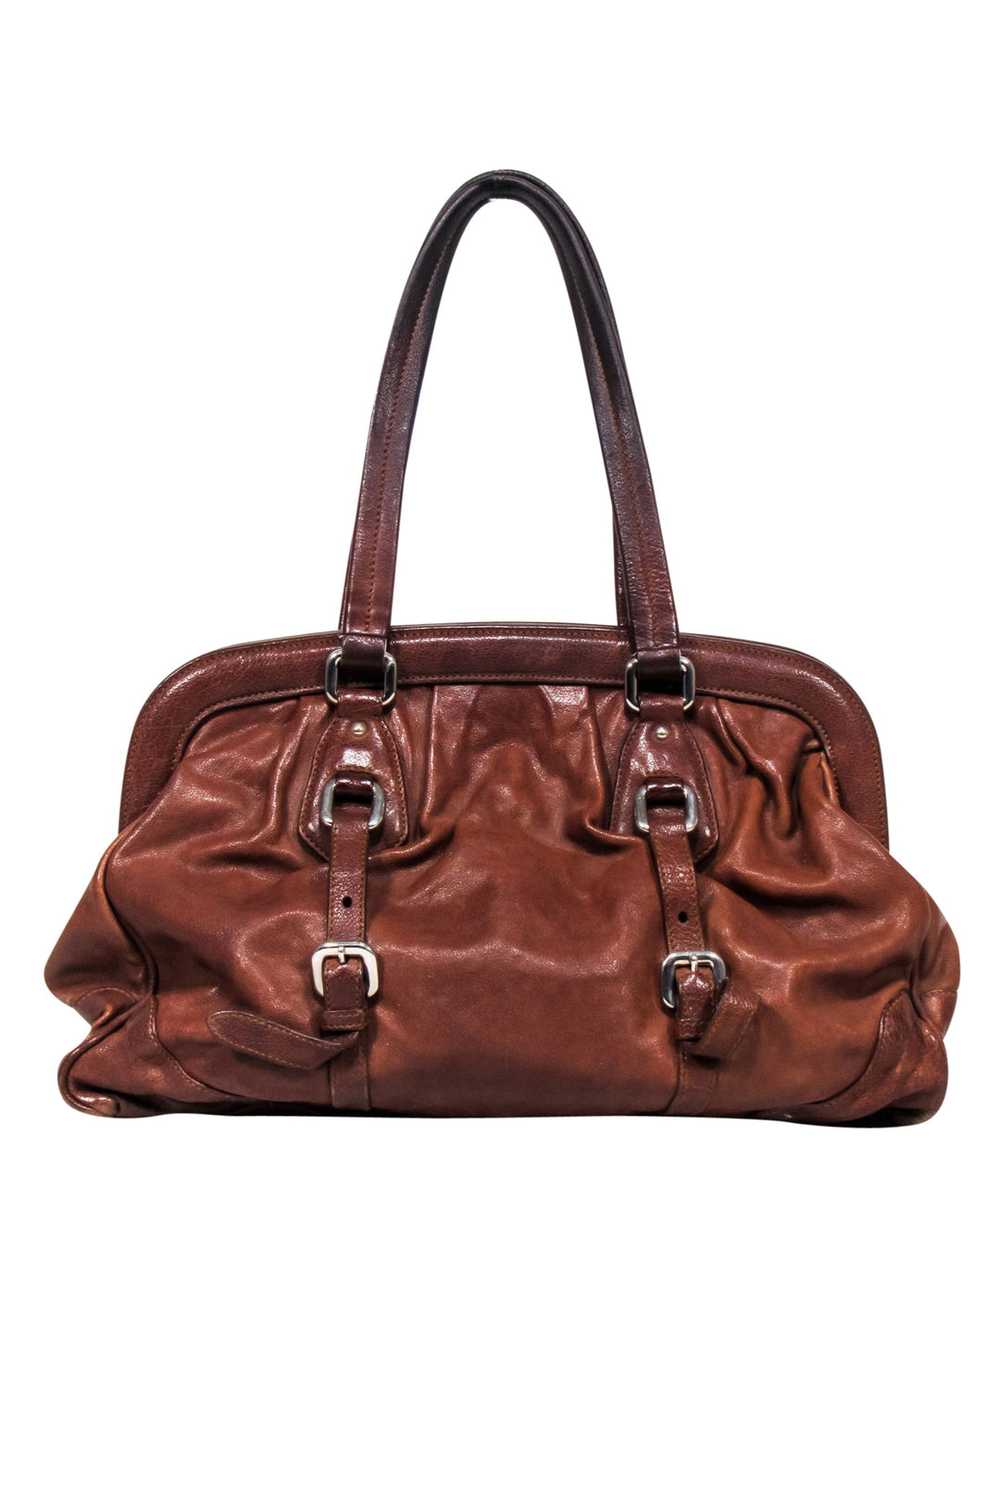 Prada - Brown "Vitello Shine" Handbag - image 3